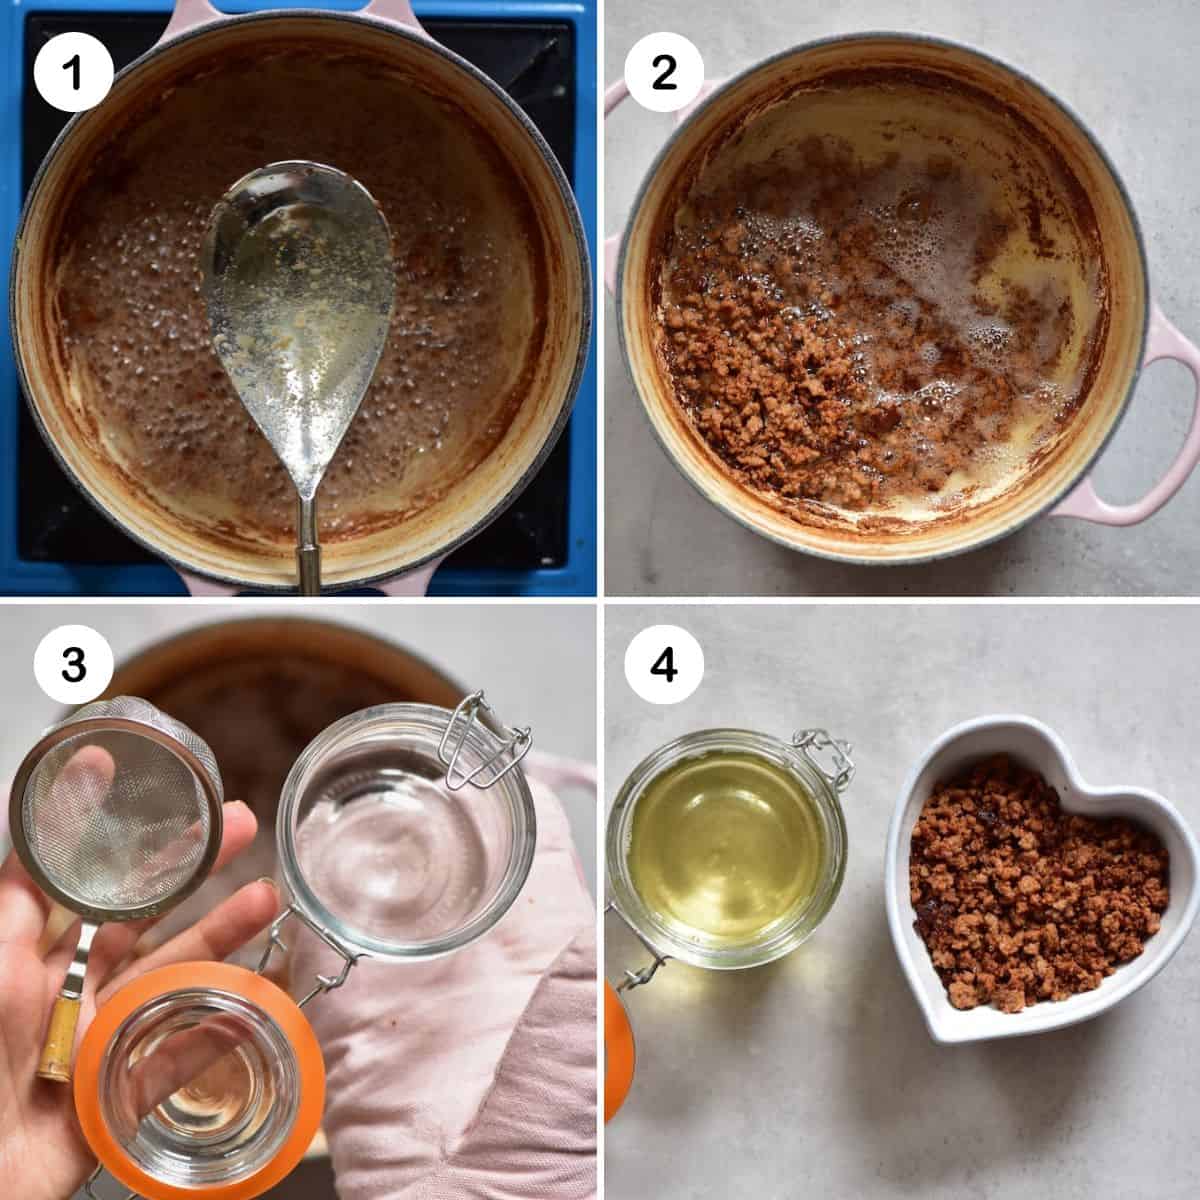 Steps for straining homemade coconut oil